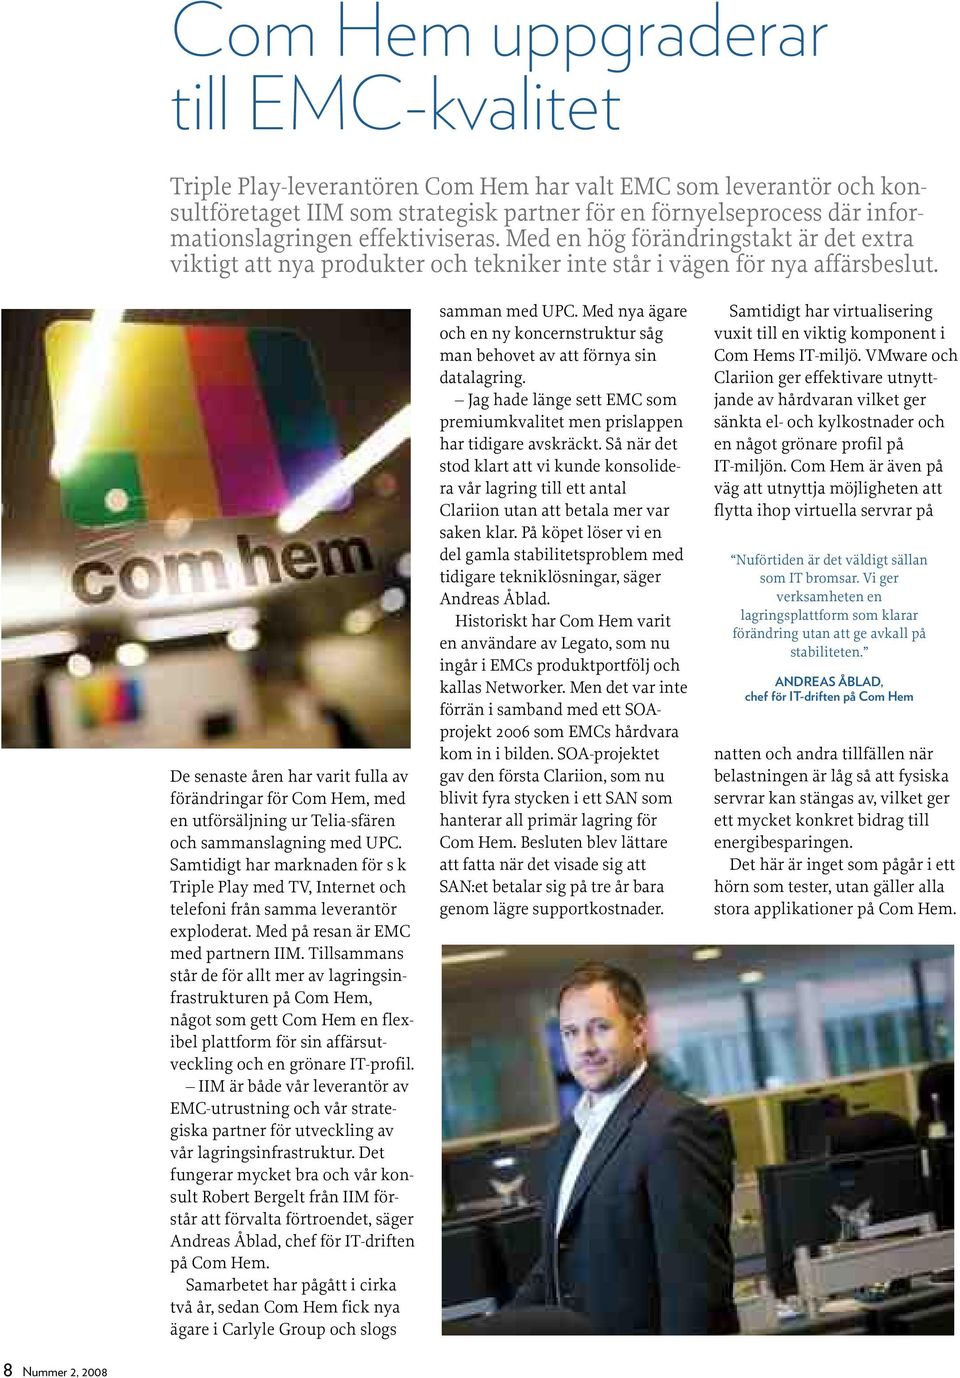 De senaste åren har varit fulla av förändringar för Com Hem, med en utförsäljning ur Telia-sfären och sammanslagning med UPC.